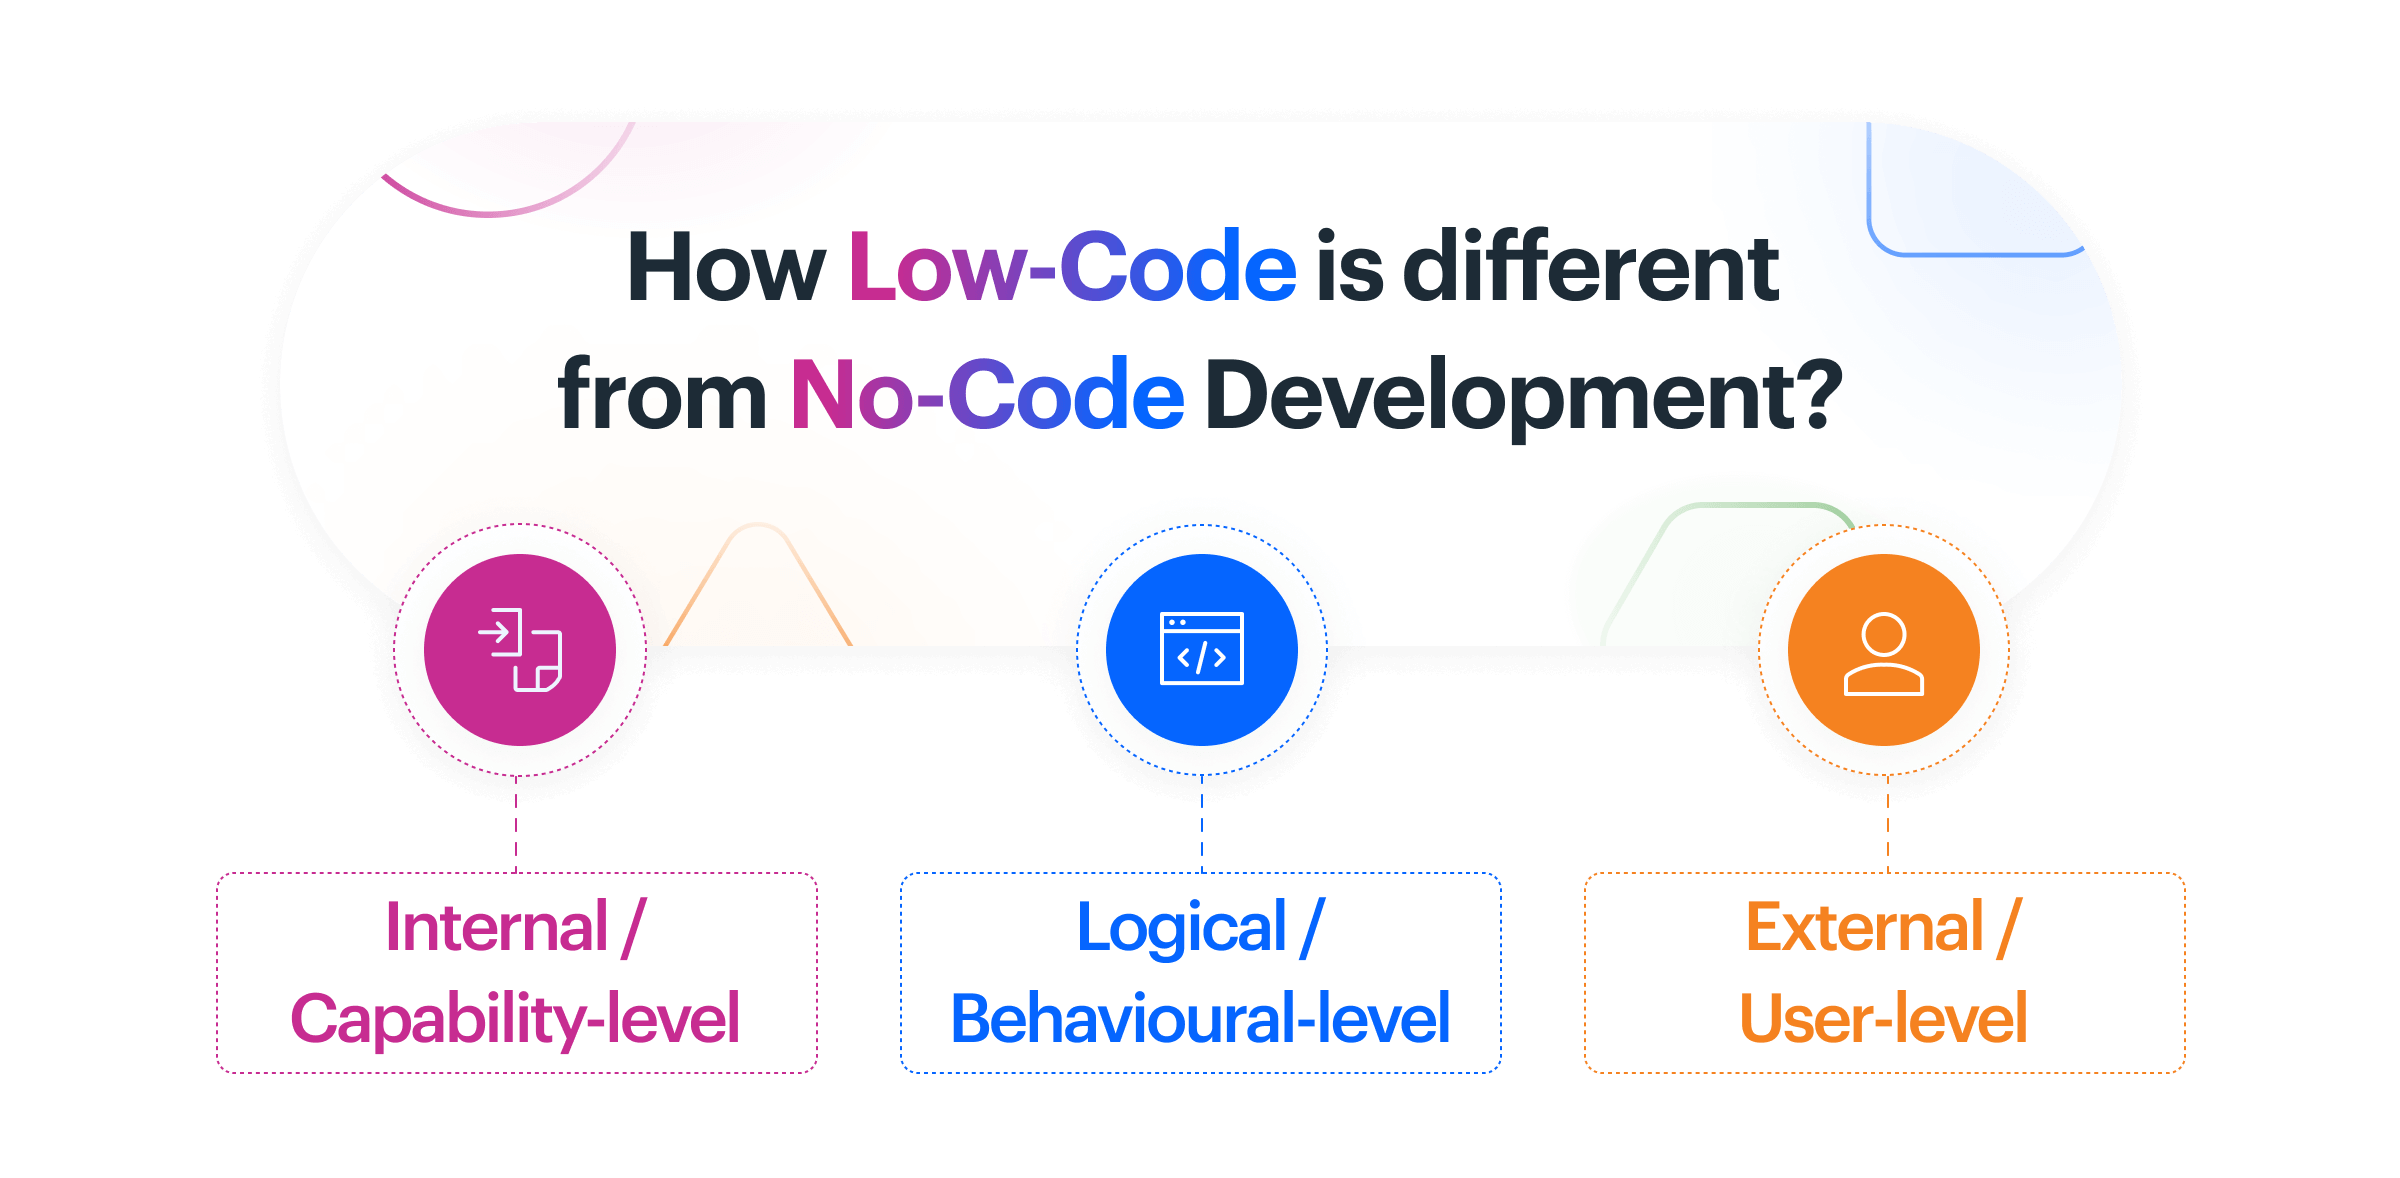 No-Code Development Features